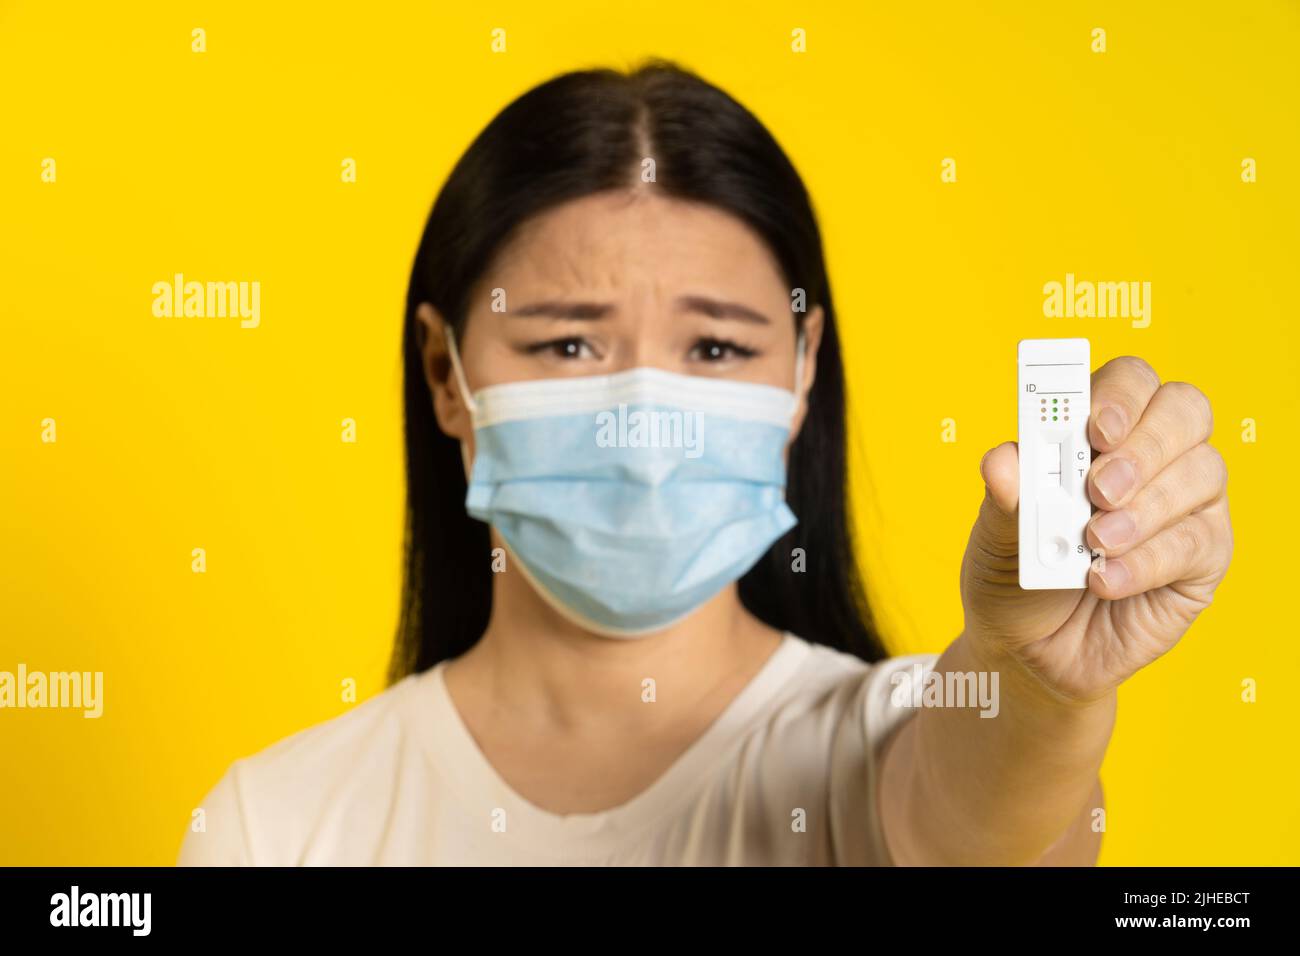 Donna asiatica in maschera medica e test in mano triste guardando la fotocamera isolato su sfondo giallo. Concetto pandemico, varicella o coronavirus scimmia, stile di vita sano. Attenzione selettiva al test. Foto Stock